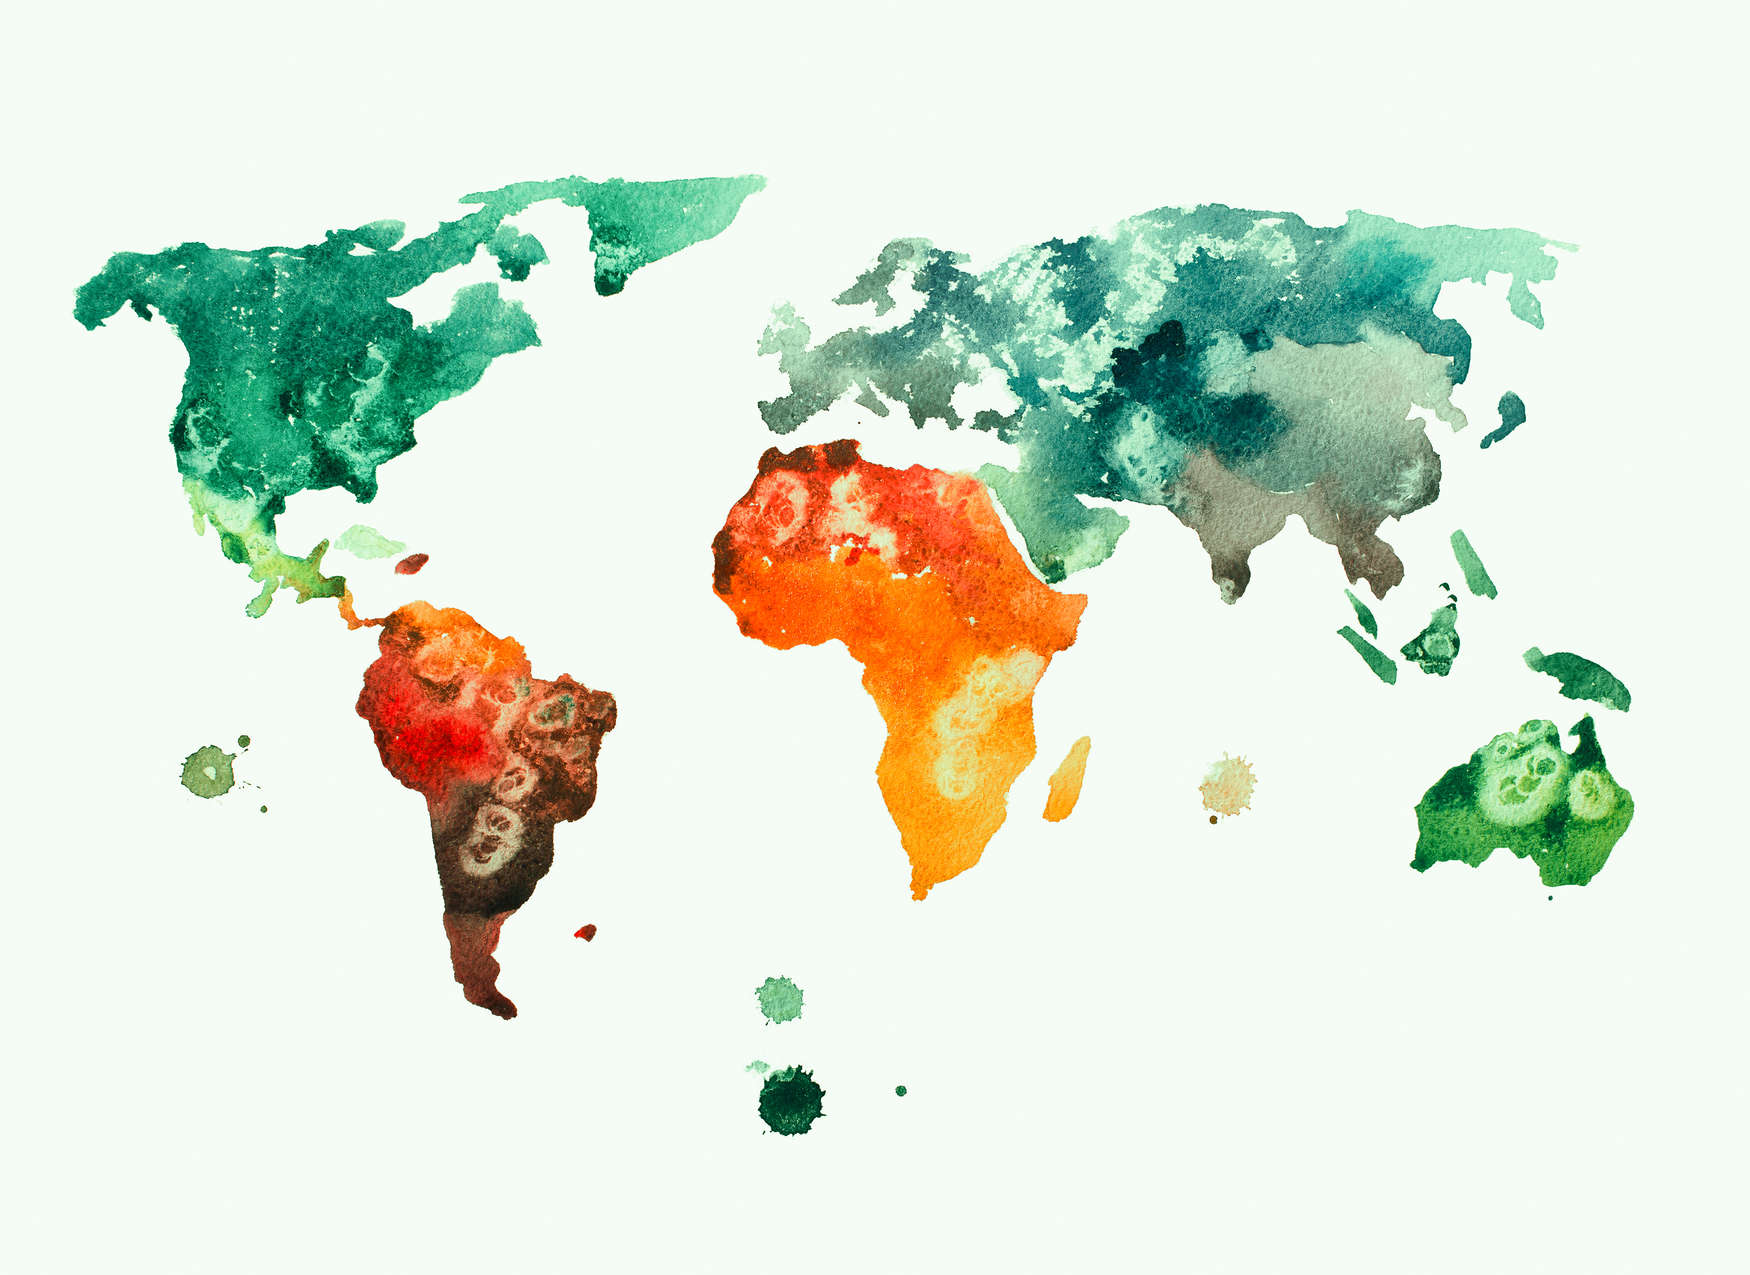             Carta da parati con mappa del mondo acquerellata - Colorata, bianca, verde
        